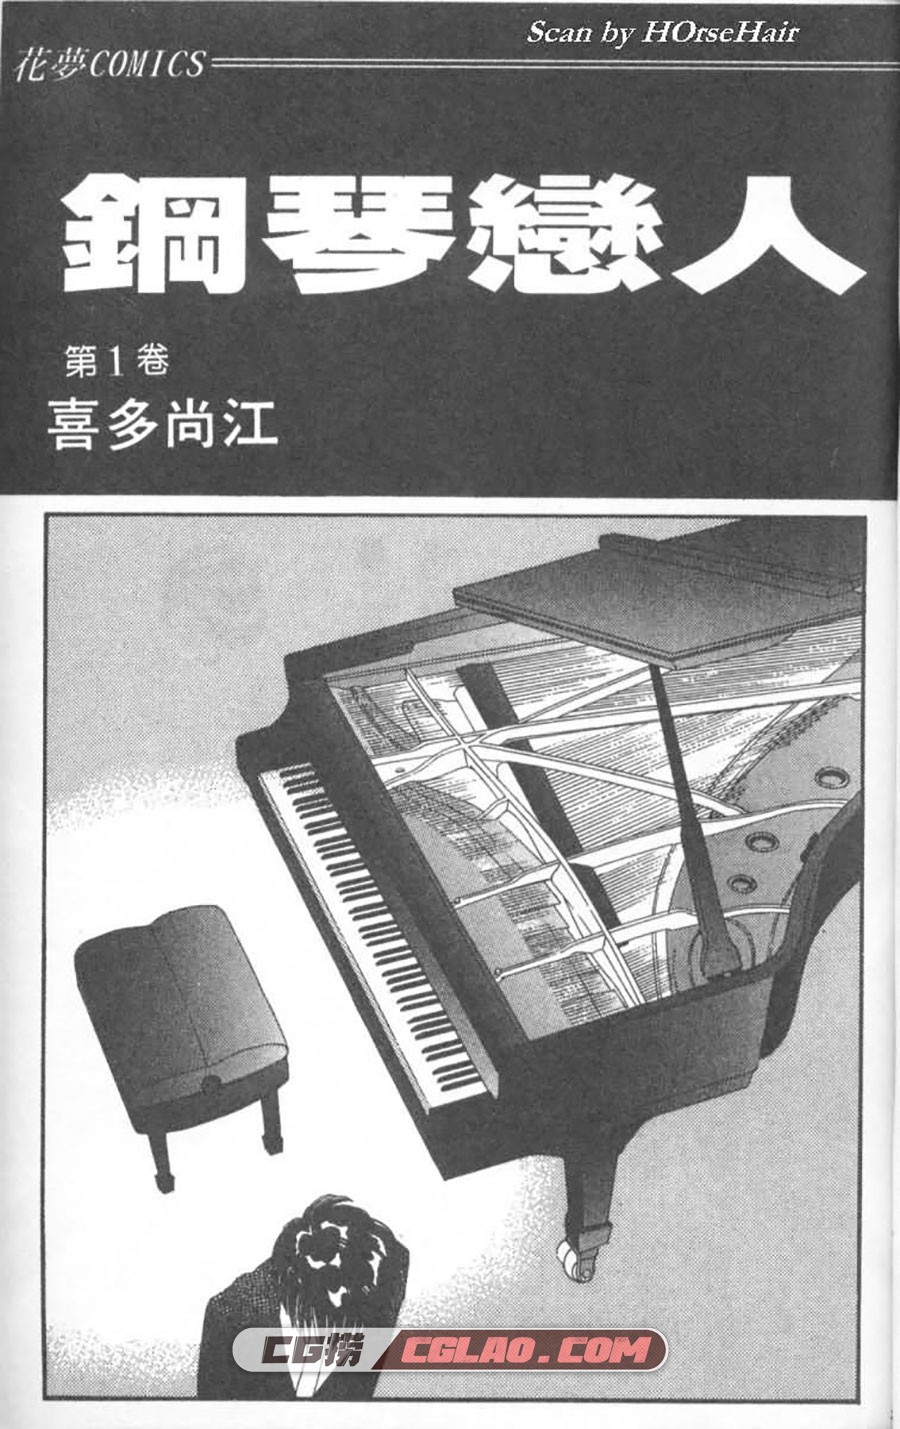 钢琴恋人 喜多尚江 1-2卷 漫画已完结全部下载 百度网盘,Piano01-001.jpg